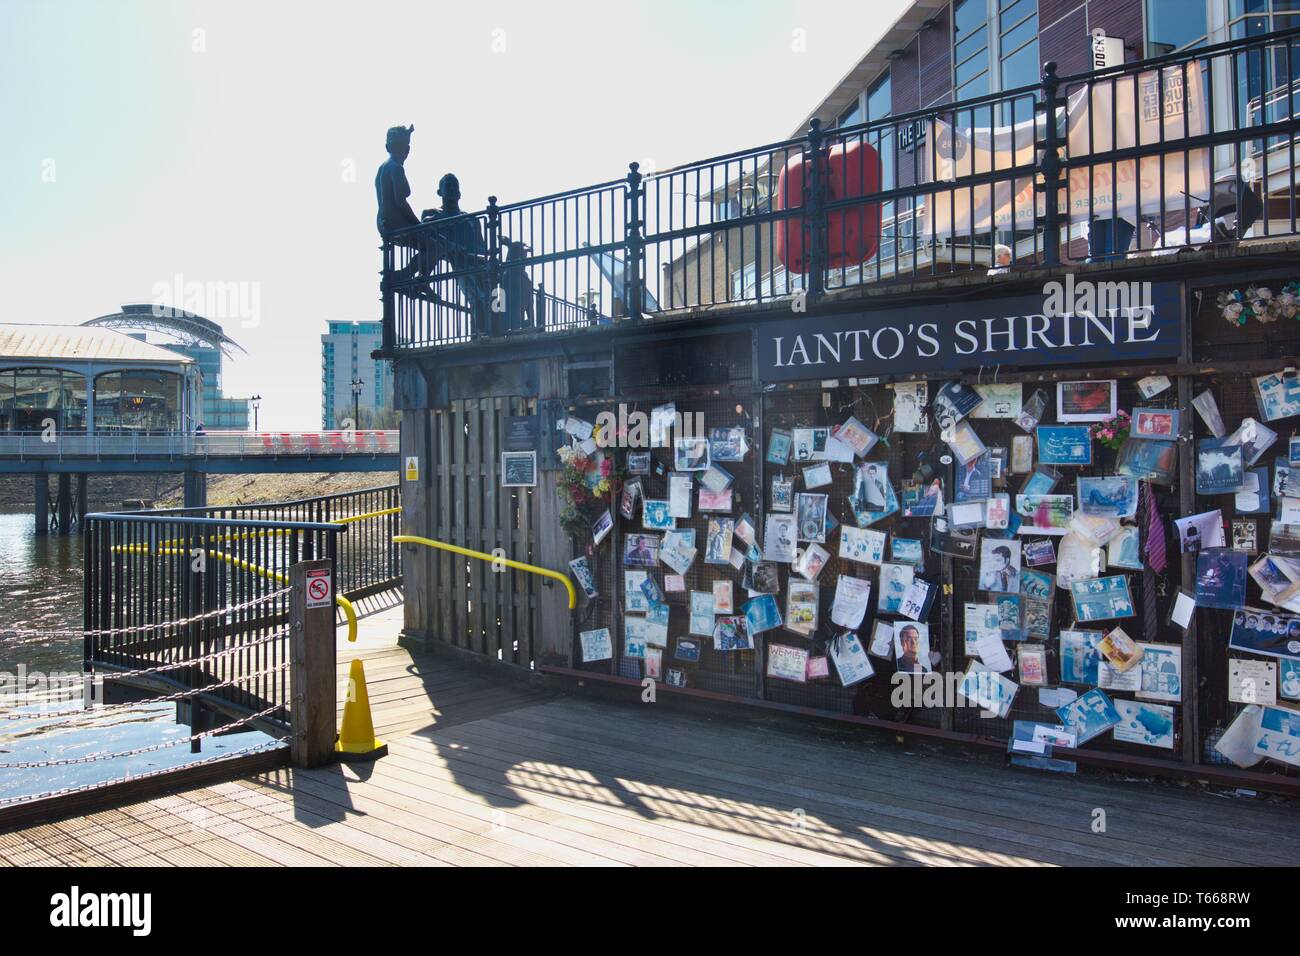 Sanctuaire de Ianto et "Des gens comme nous" sculpture, Mermaid Quay, la baie de Cardiff, Cardiff, Pays de Galles, Royaume-Uni. Banque D'Images